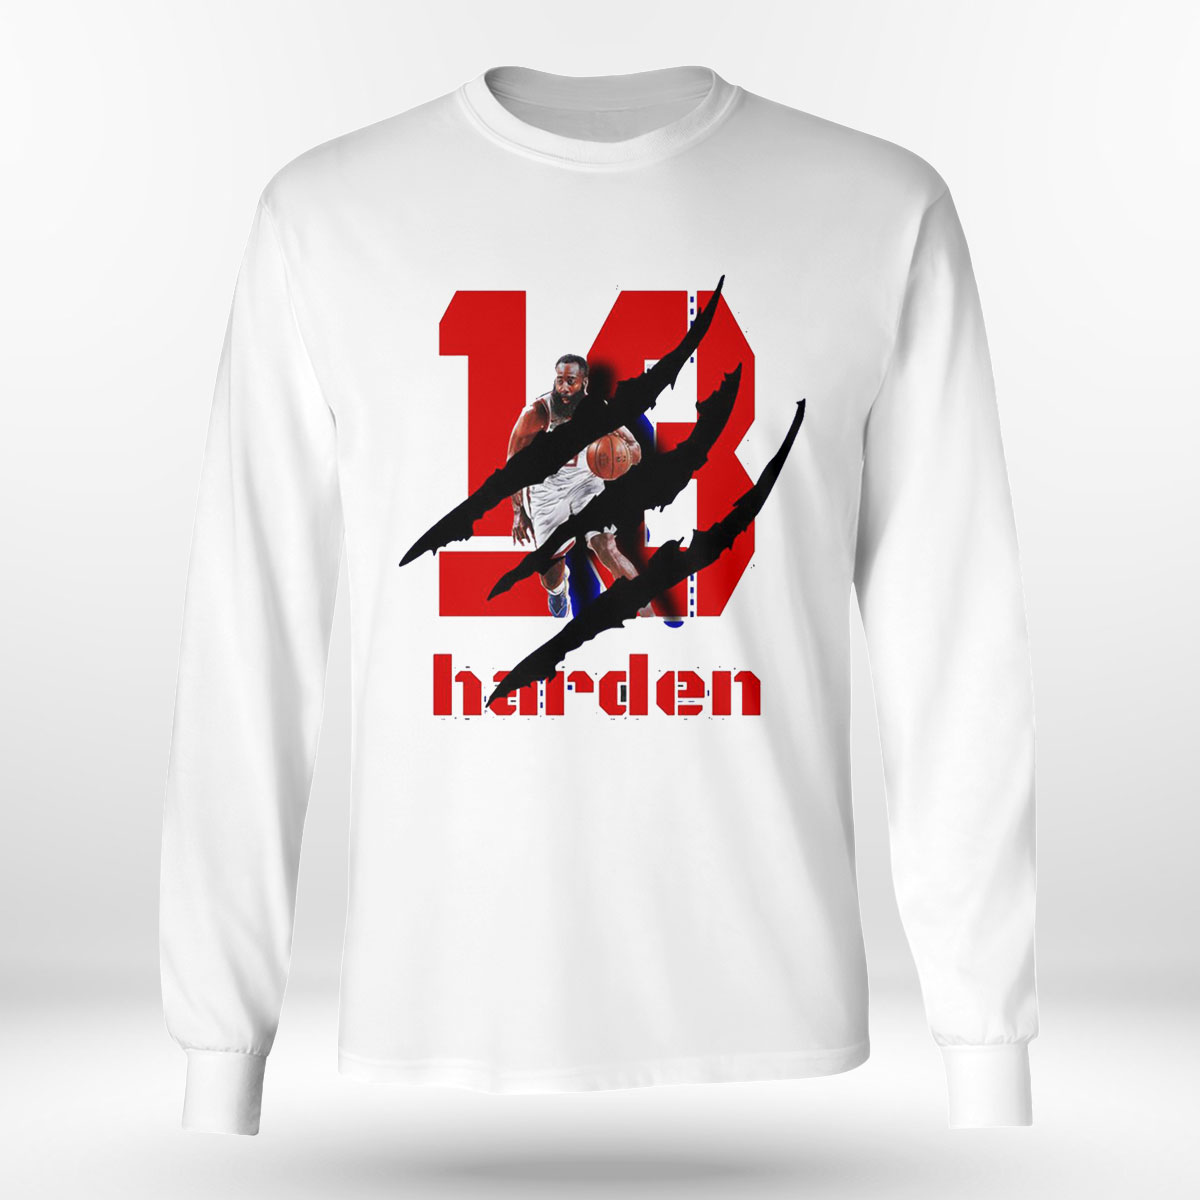 https://newagetee.com/wp-content/uploads/2022/11/longsleeve-shirt-sixers-basketball-player-13-james-harden-hoodie-shirt.jpeg